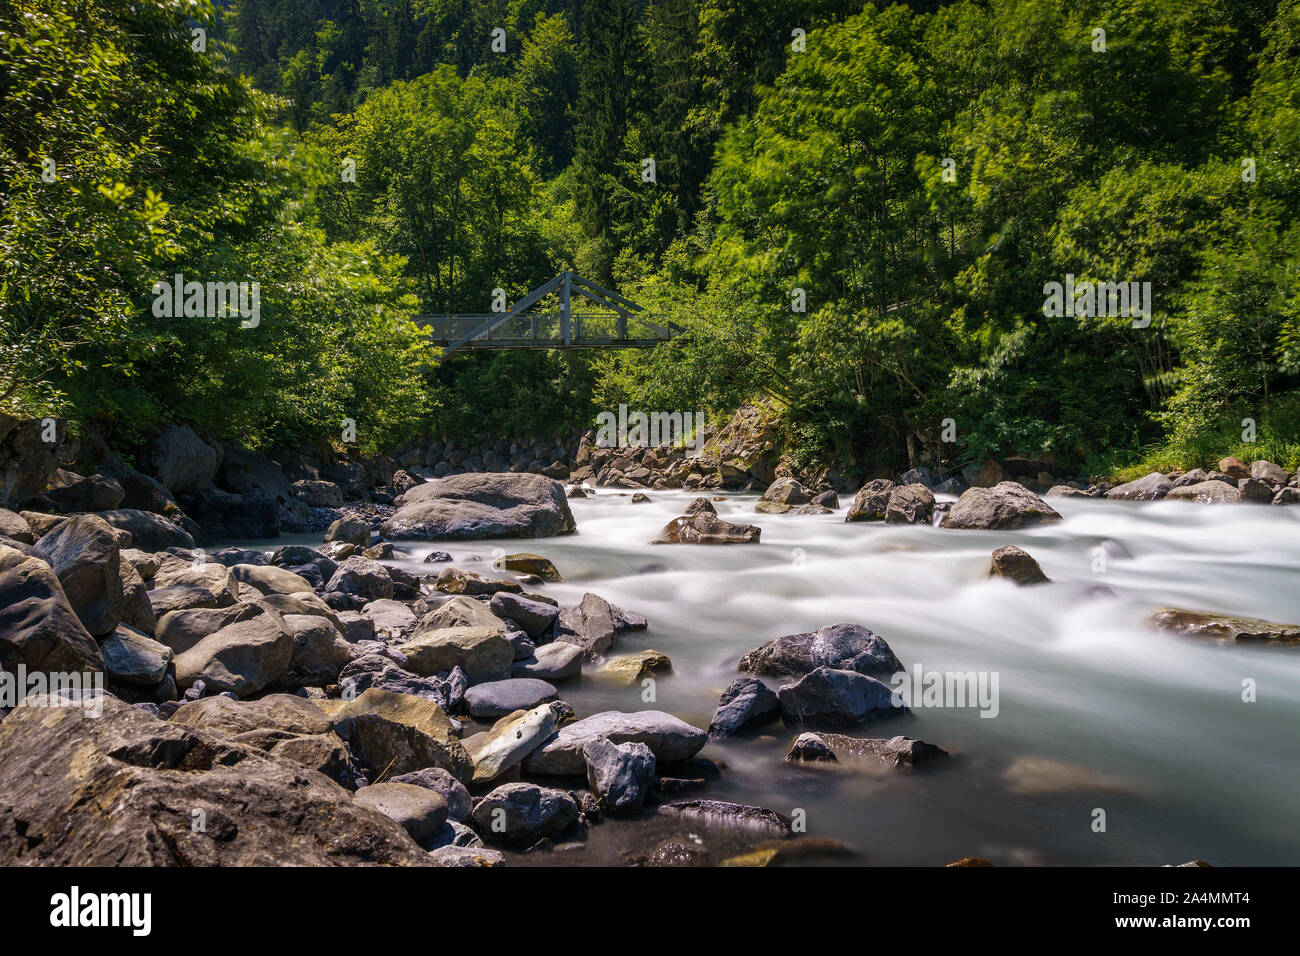 Kander rivière qui coule près du lac Blausee dans l'Oberland Bernois, Suisse Banque D'Images